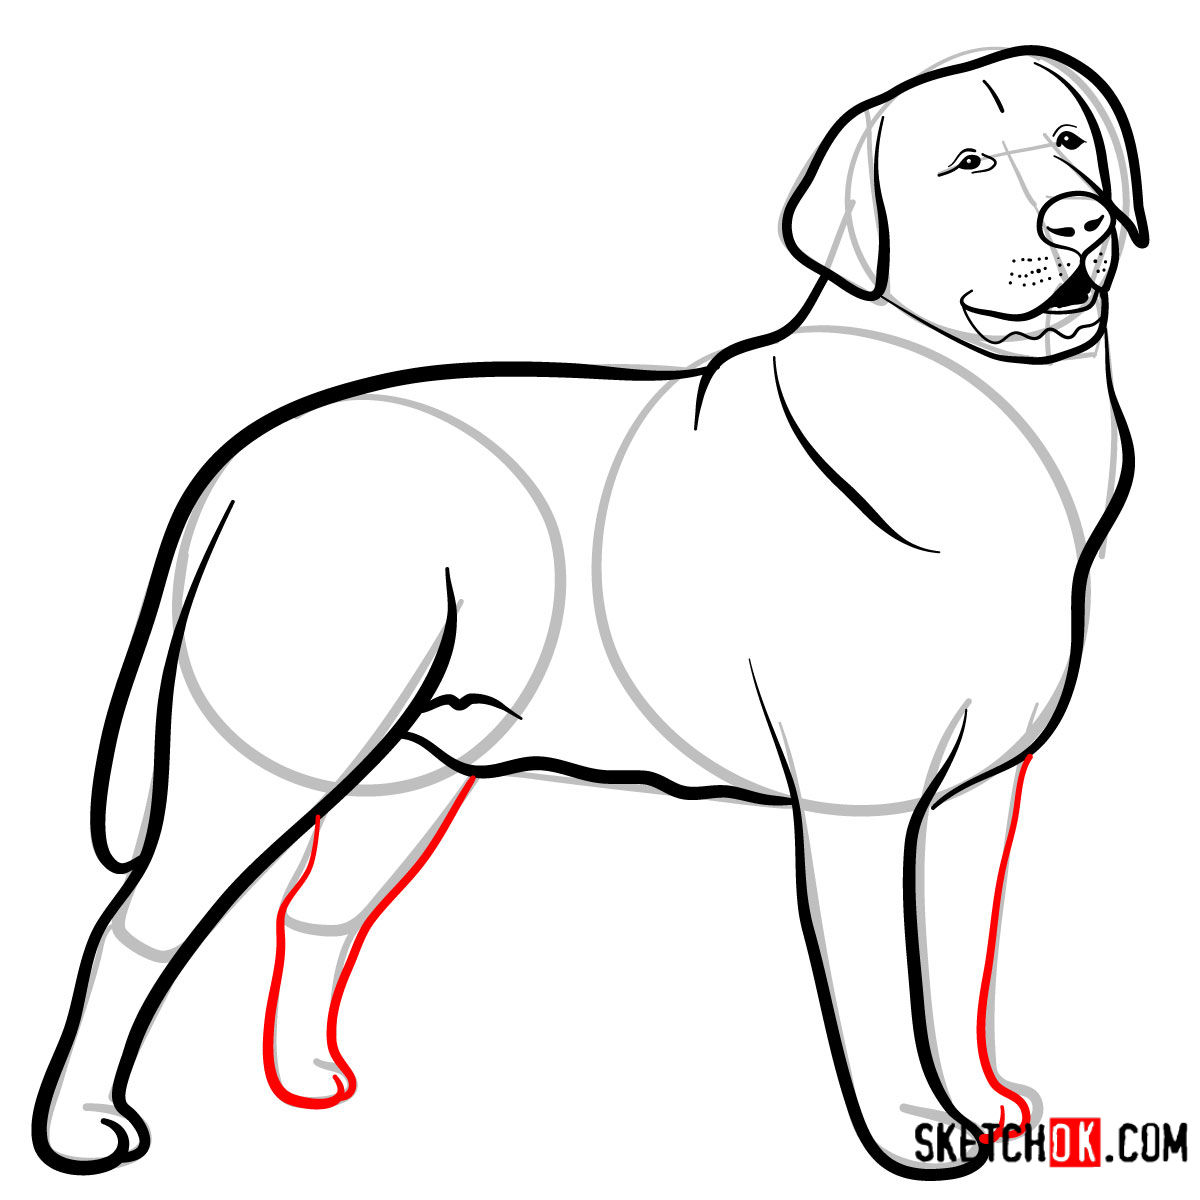 How to draw the Labrador Retriever dog Sketchok easy drawing guides